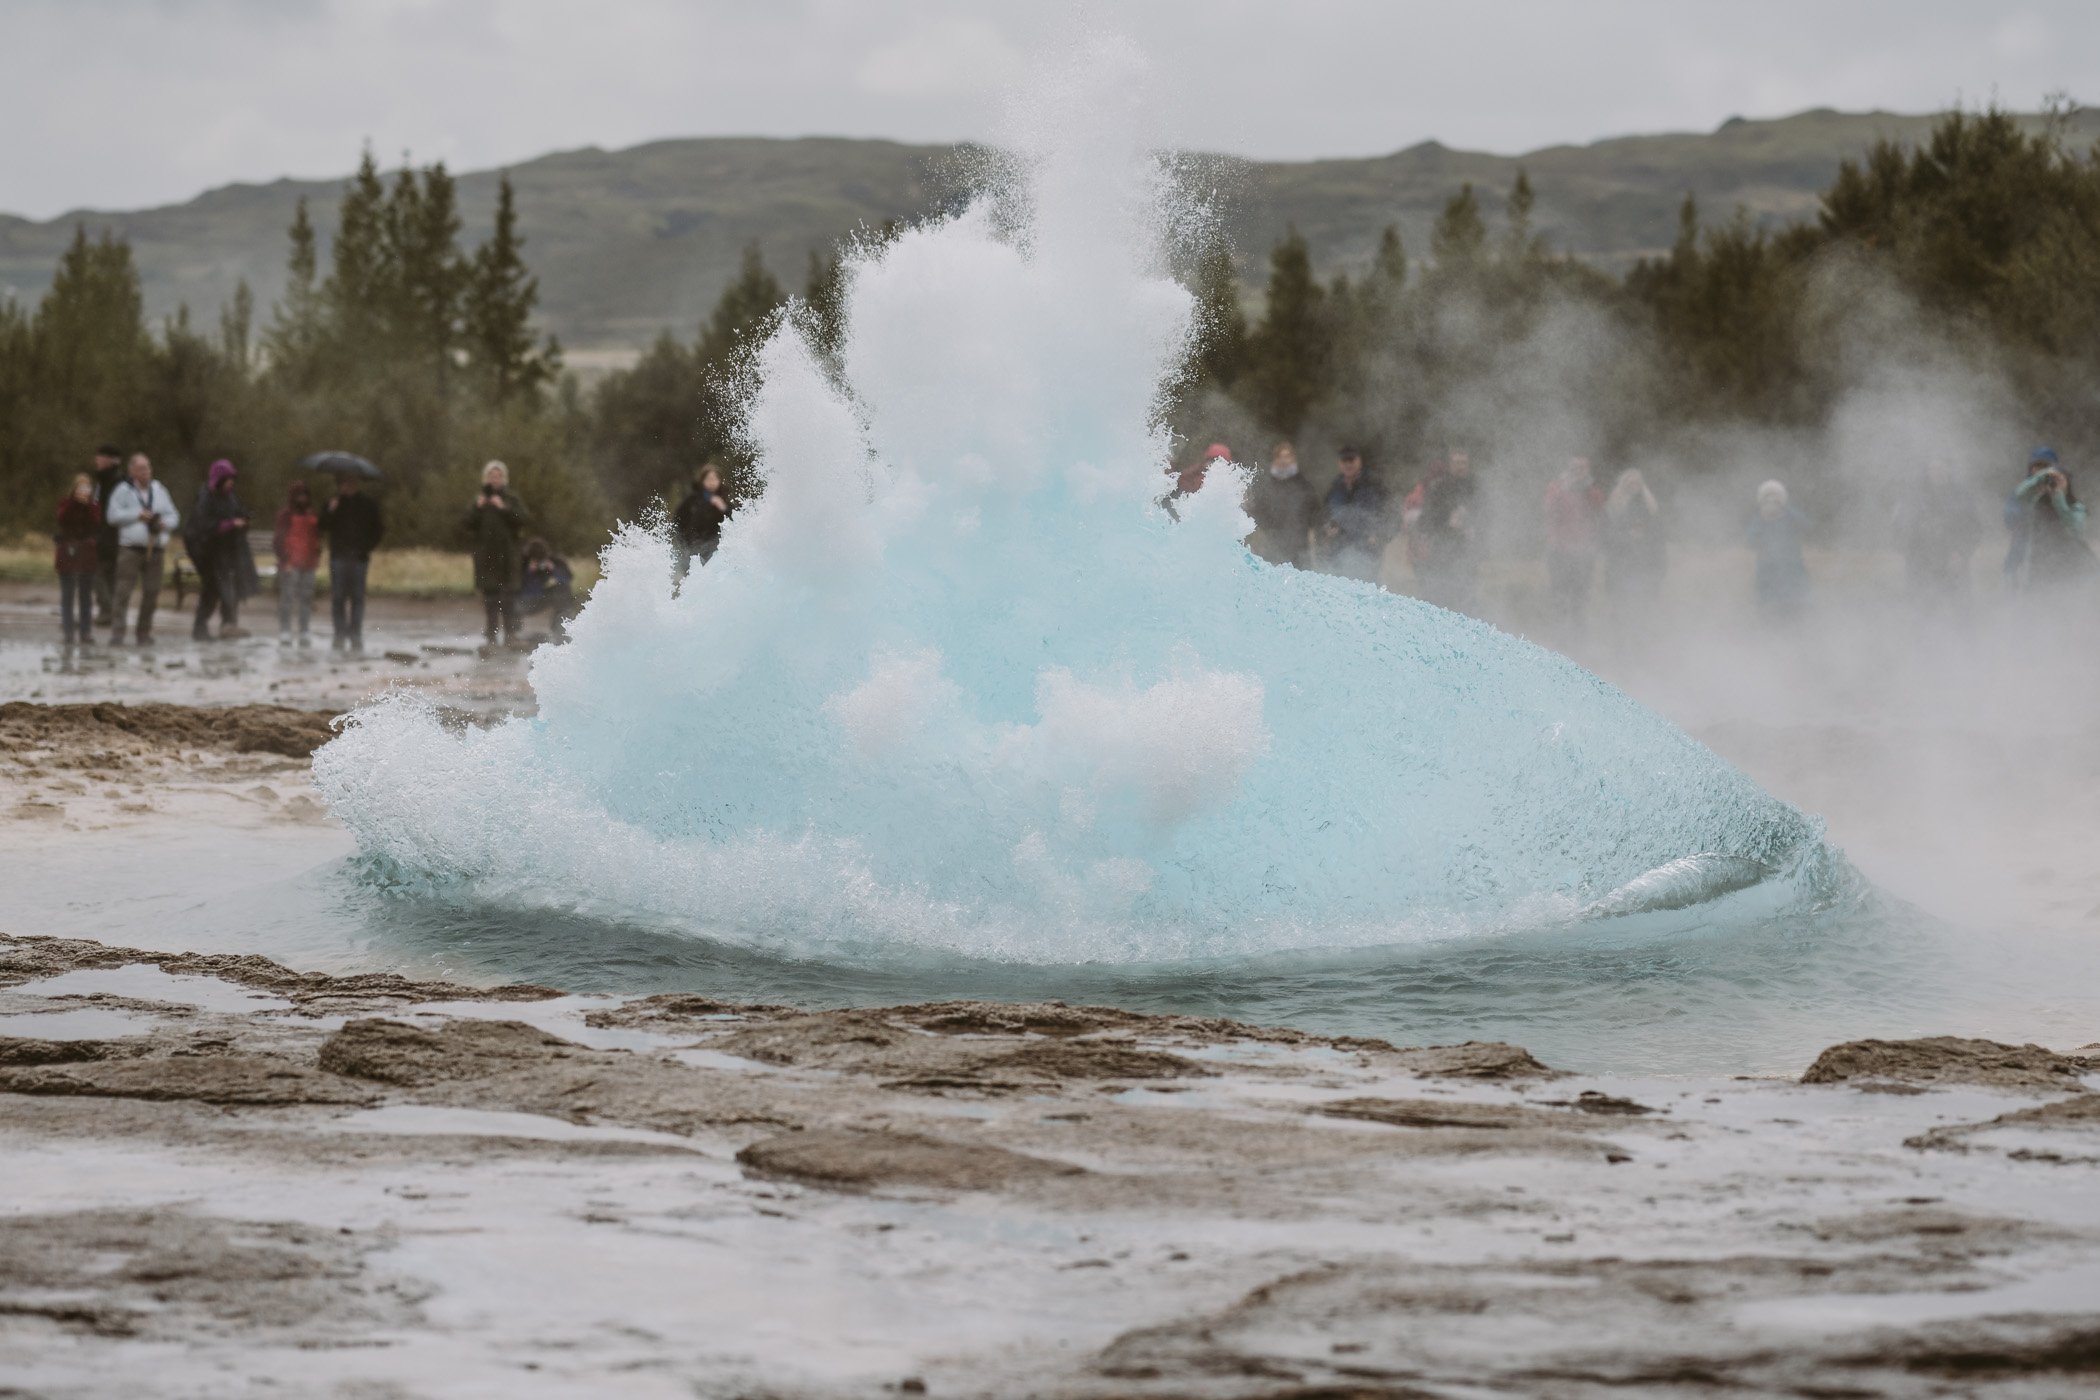 Strokkur geyser erupting in Iceland